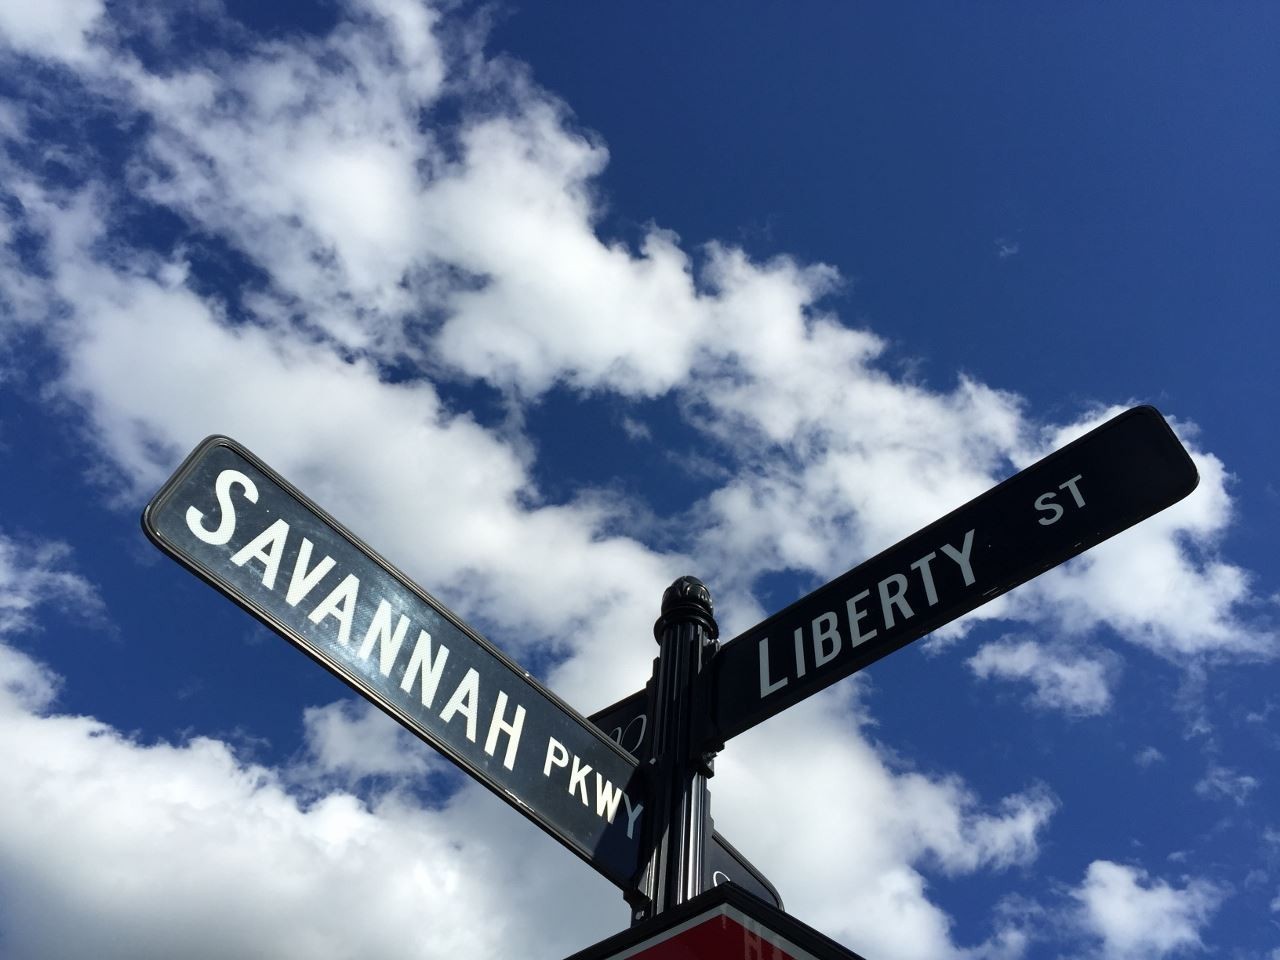 22. 101 Savannah Parkway